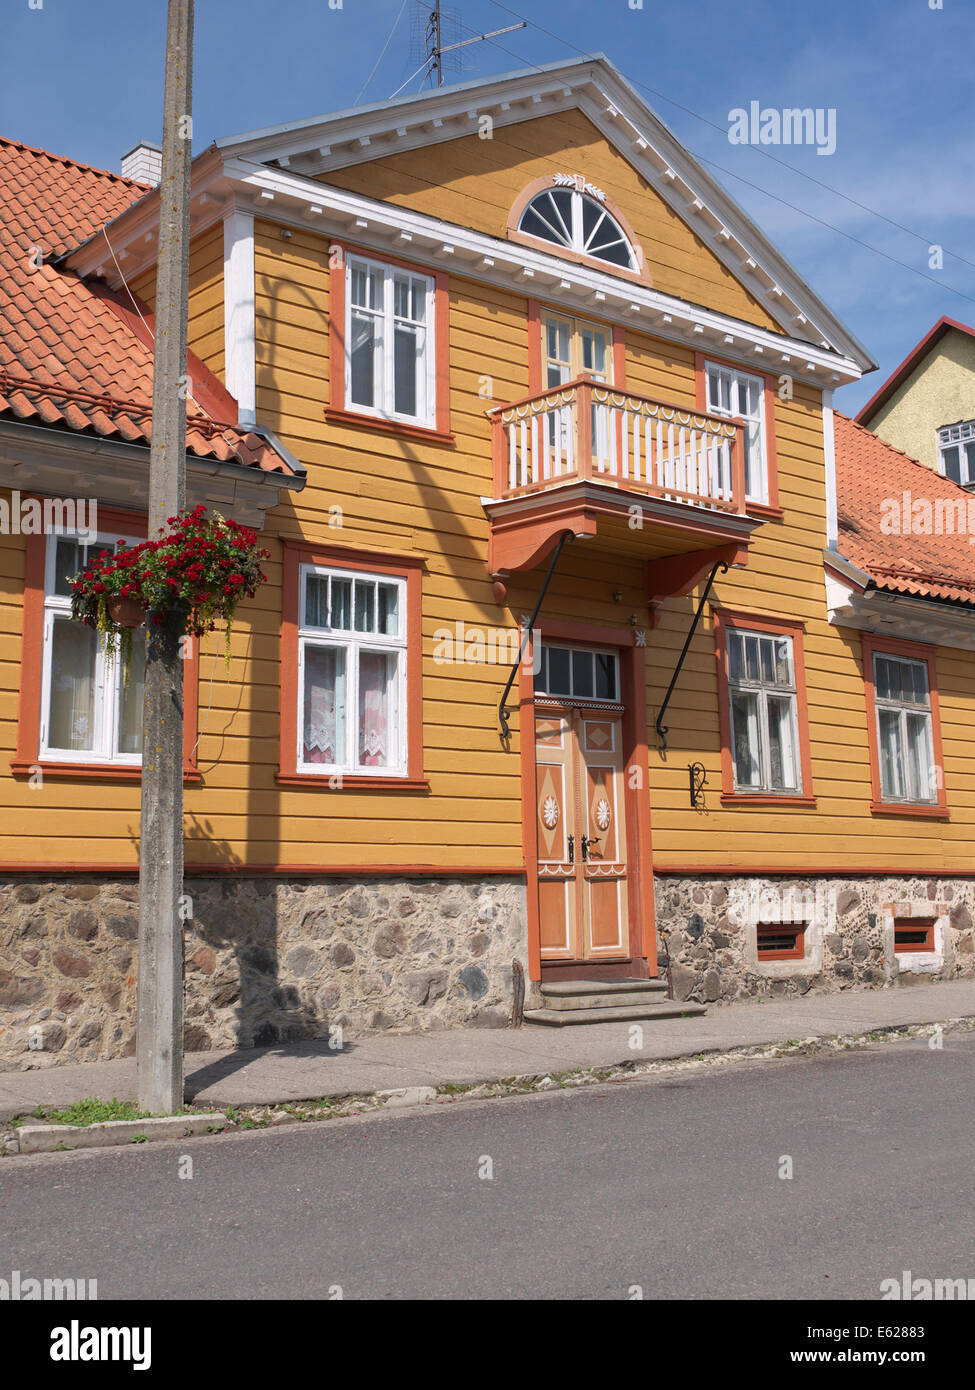 Maison d'habitation rénovée en bois jaune avec balcon dans la région de Lossi Street. Tallinn, Estonie Banque D'Images